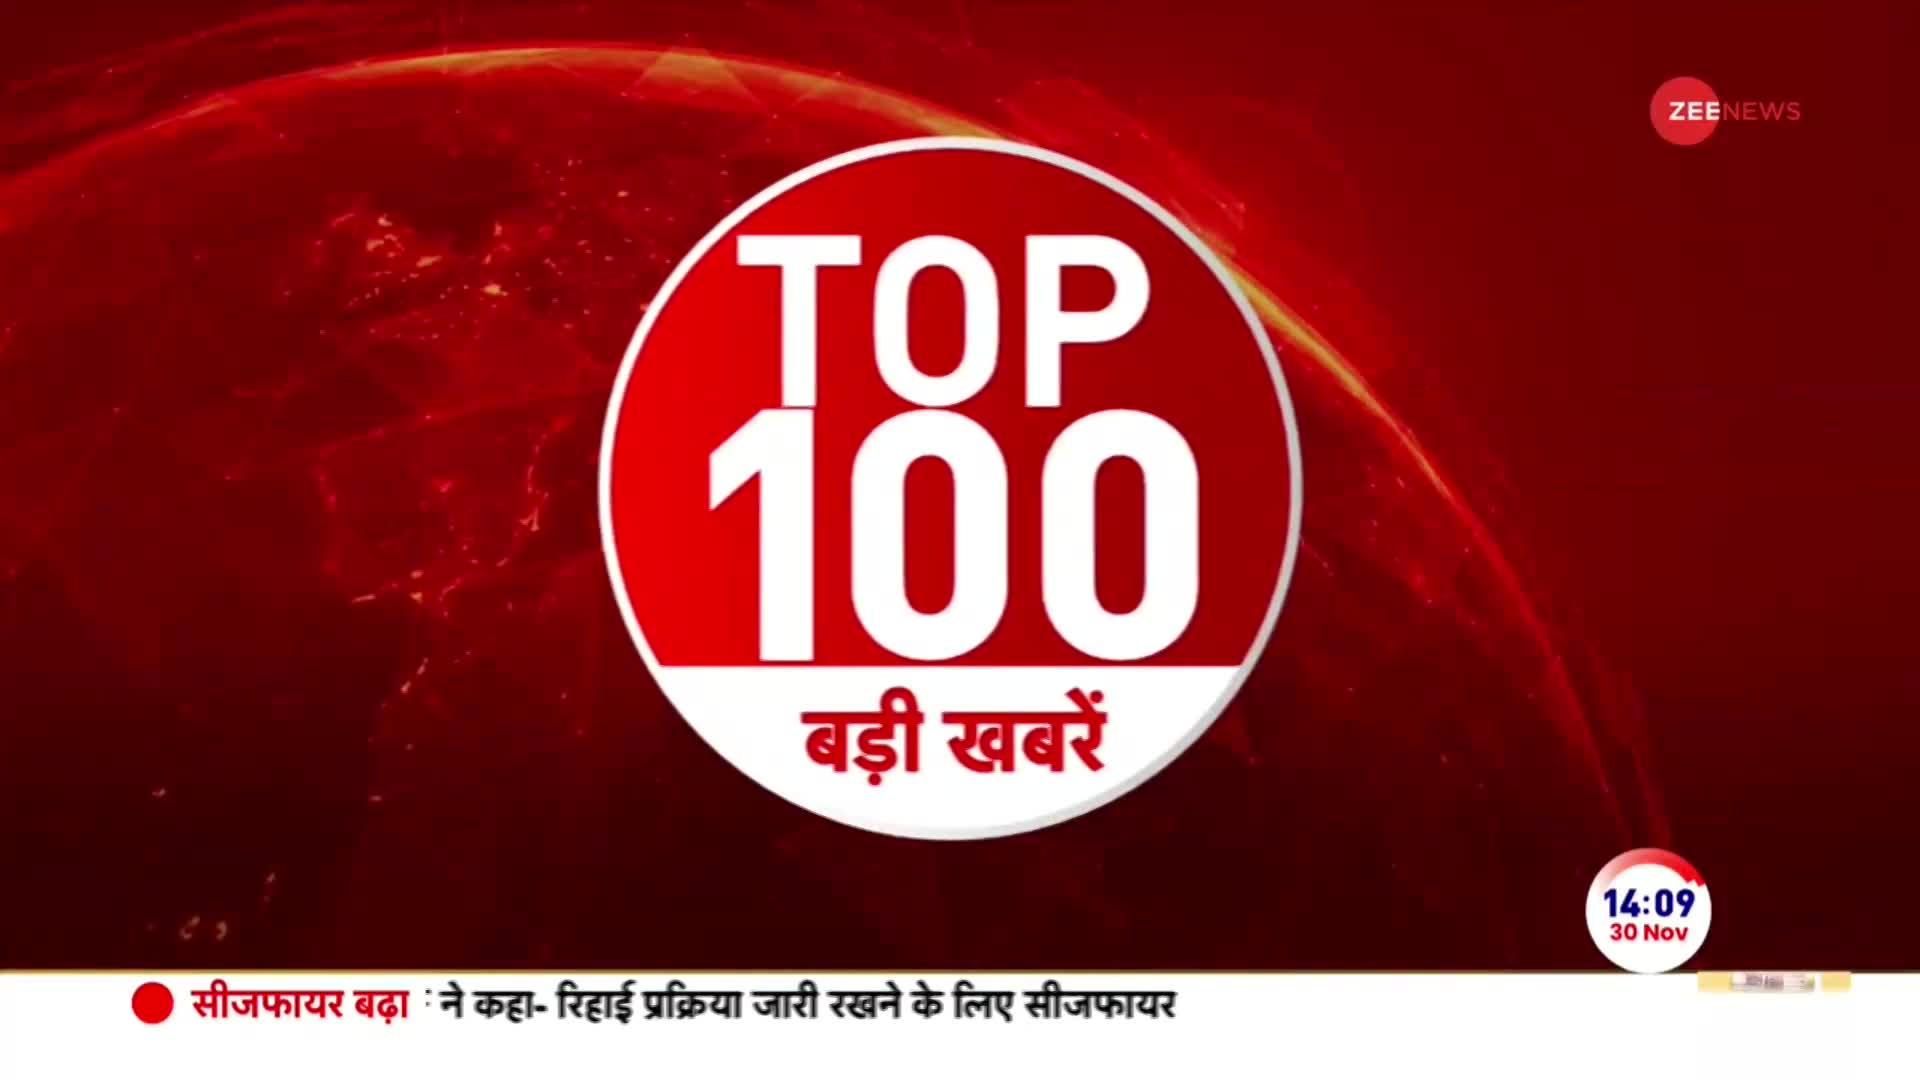 Top 100 News: देखें अभी की 100 बड़ी खबरें | PM Modi | Telangana Elections | Speed News